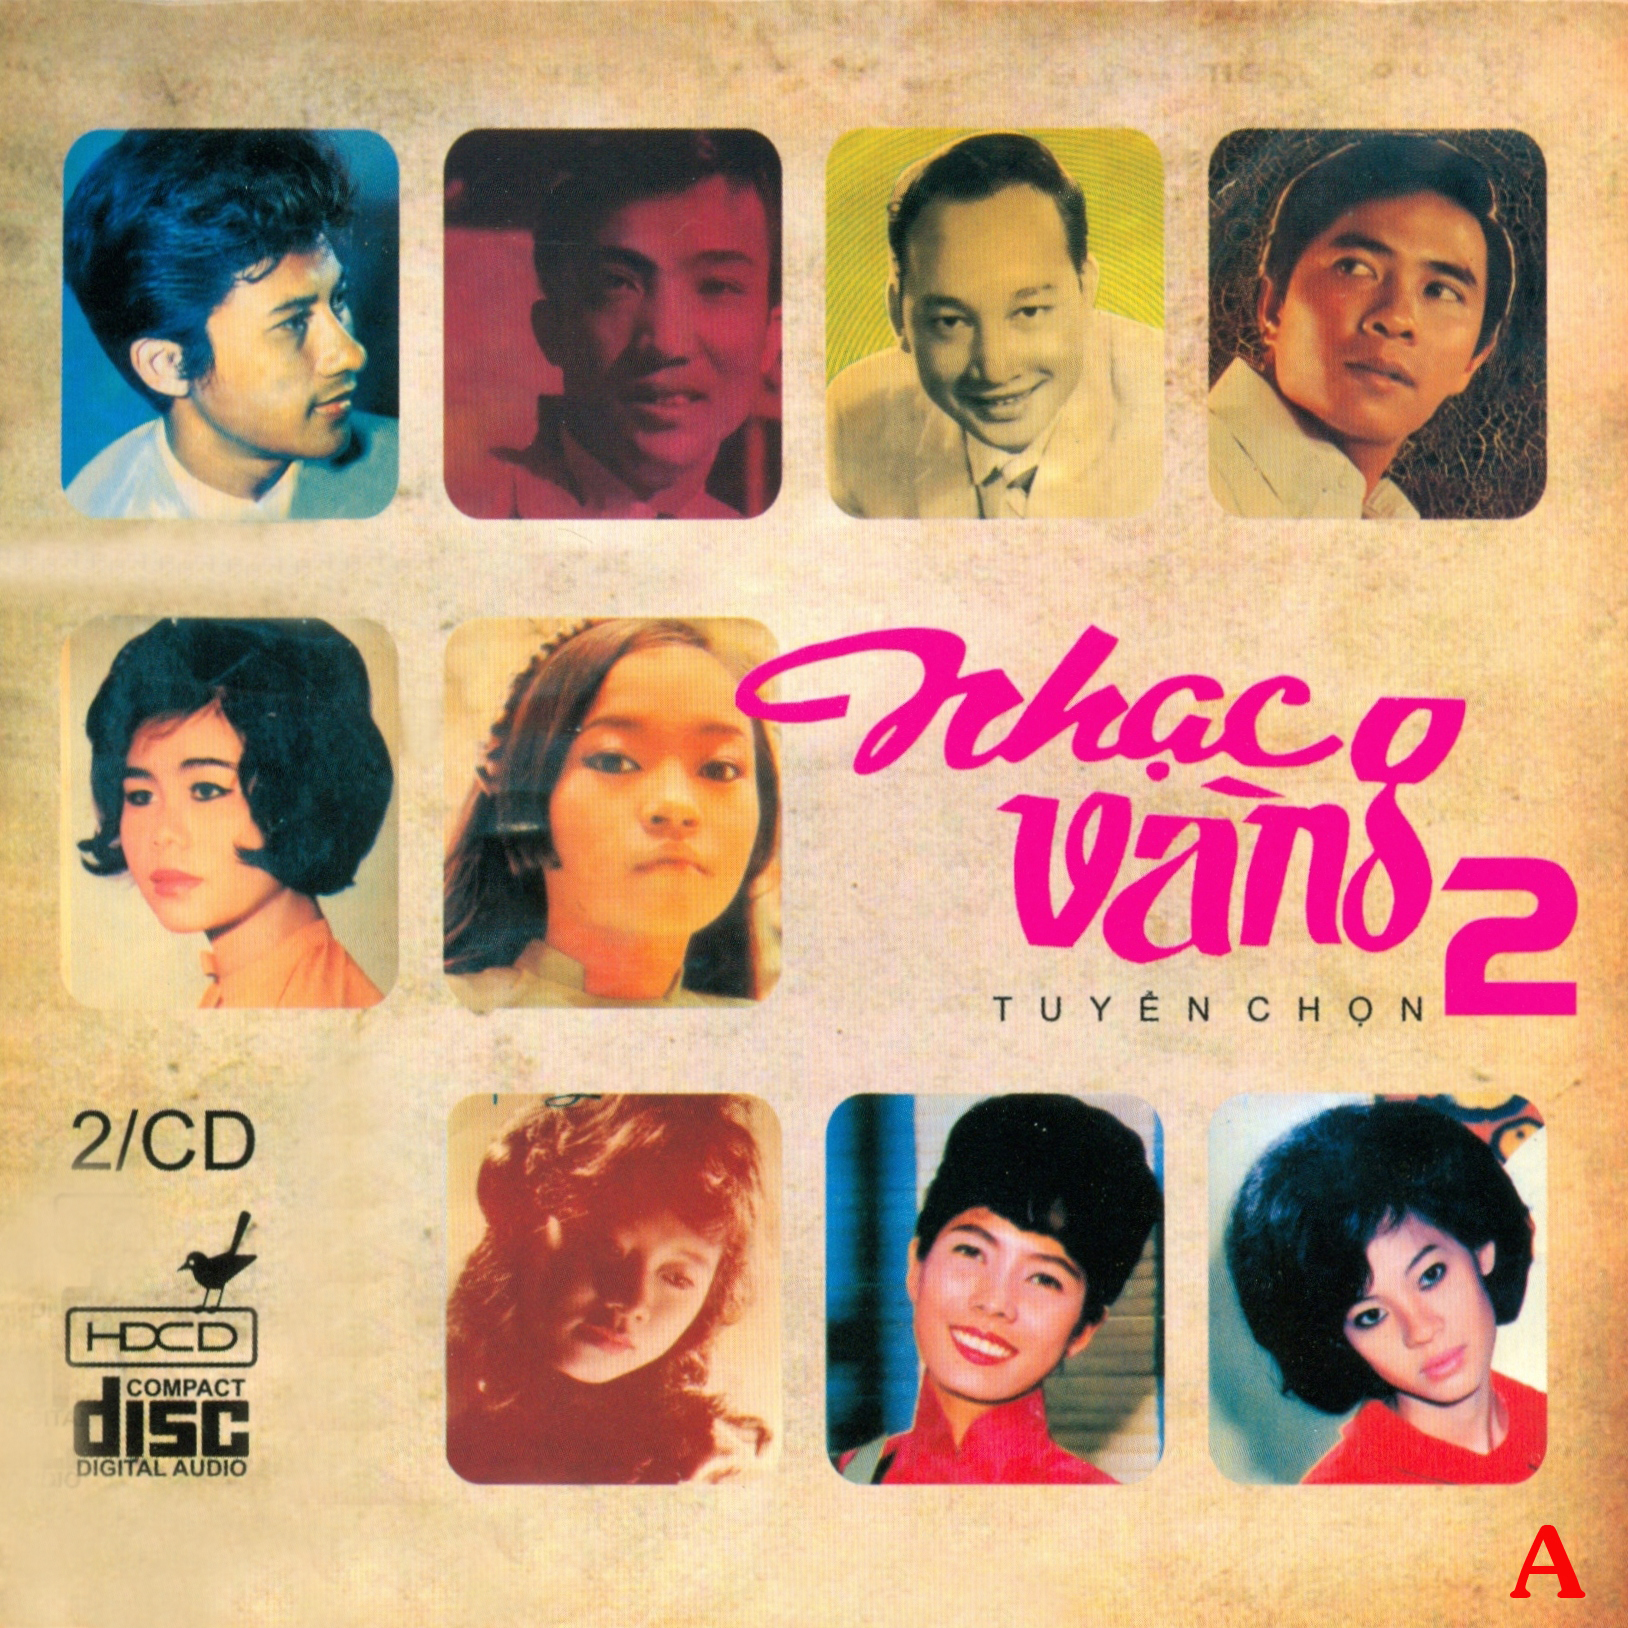 Nhạc vàng tuyển chọn trước 1975 2 – CD 2 – (WAV)